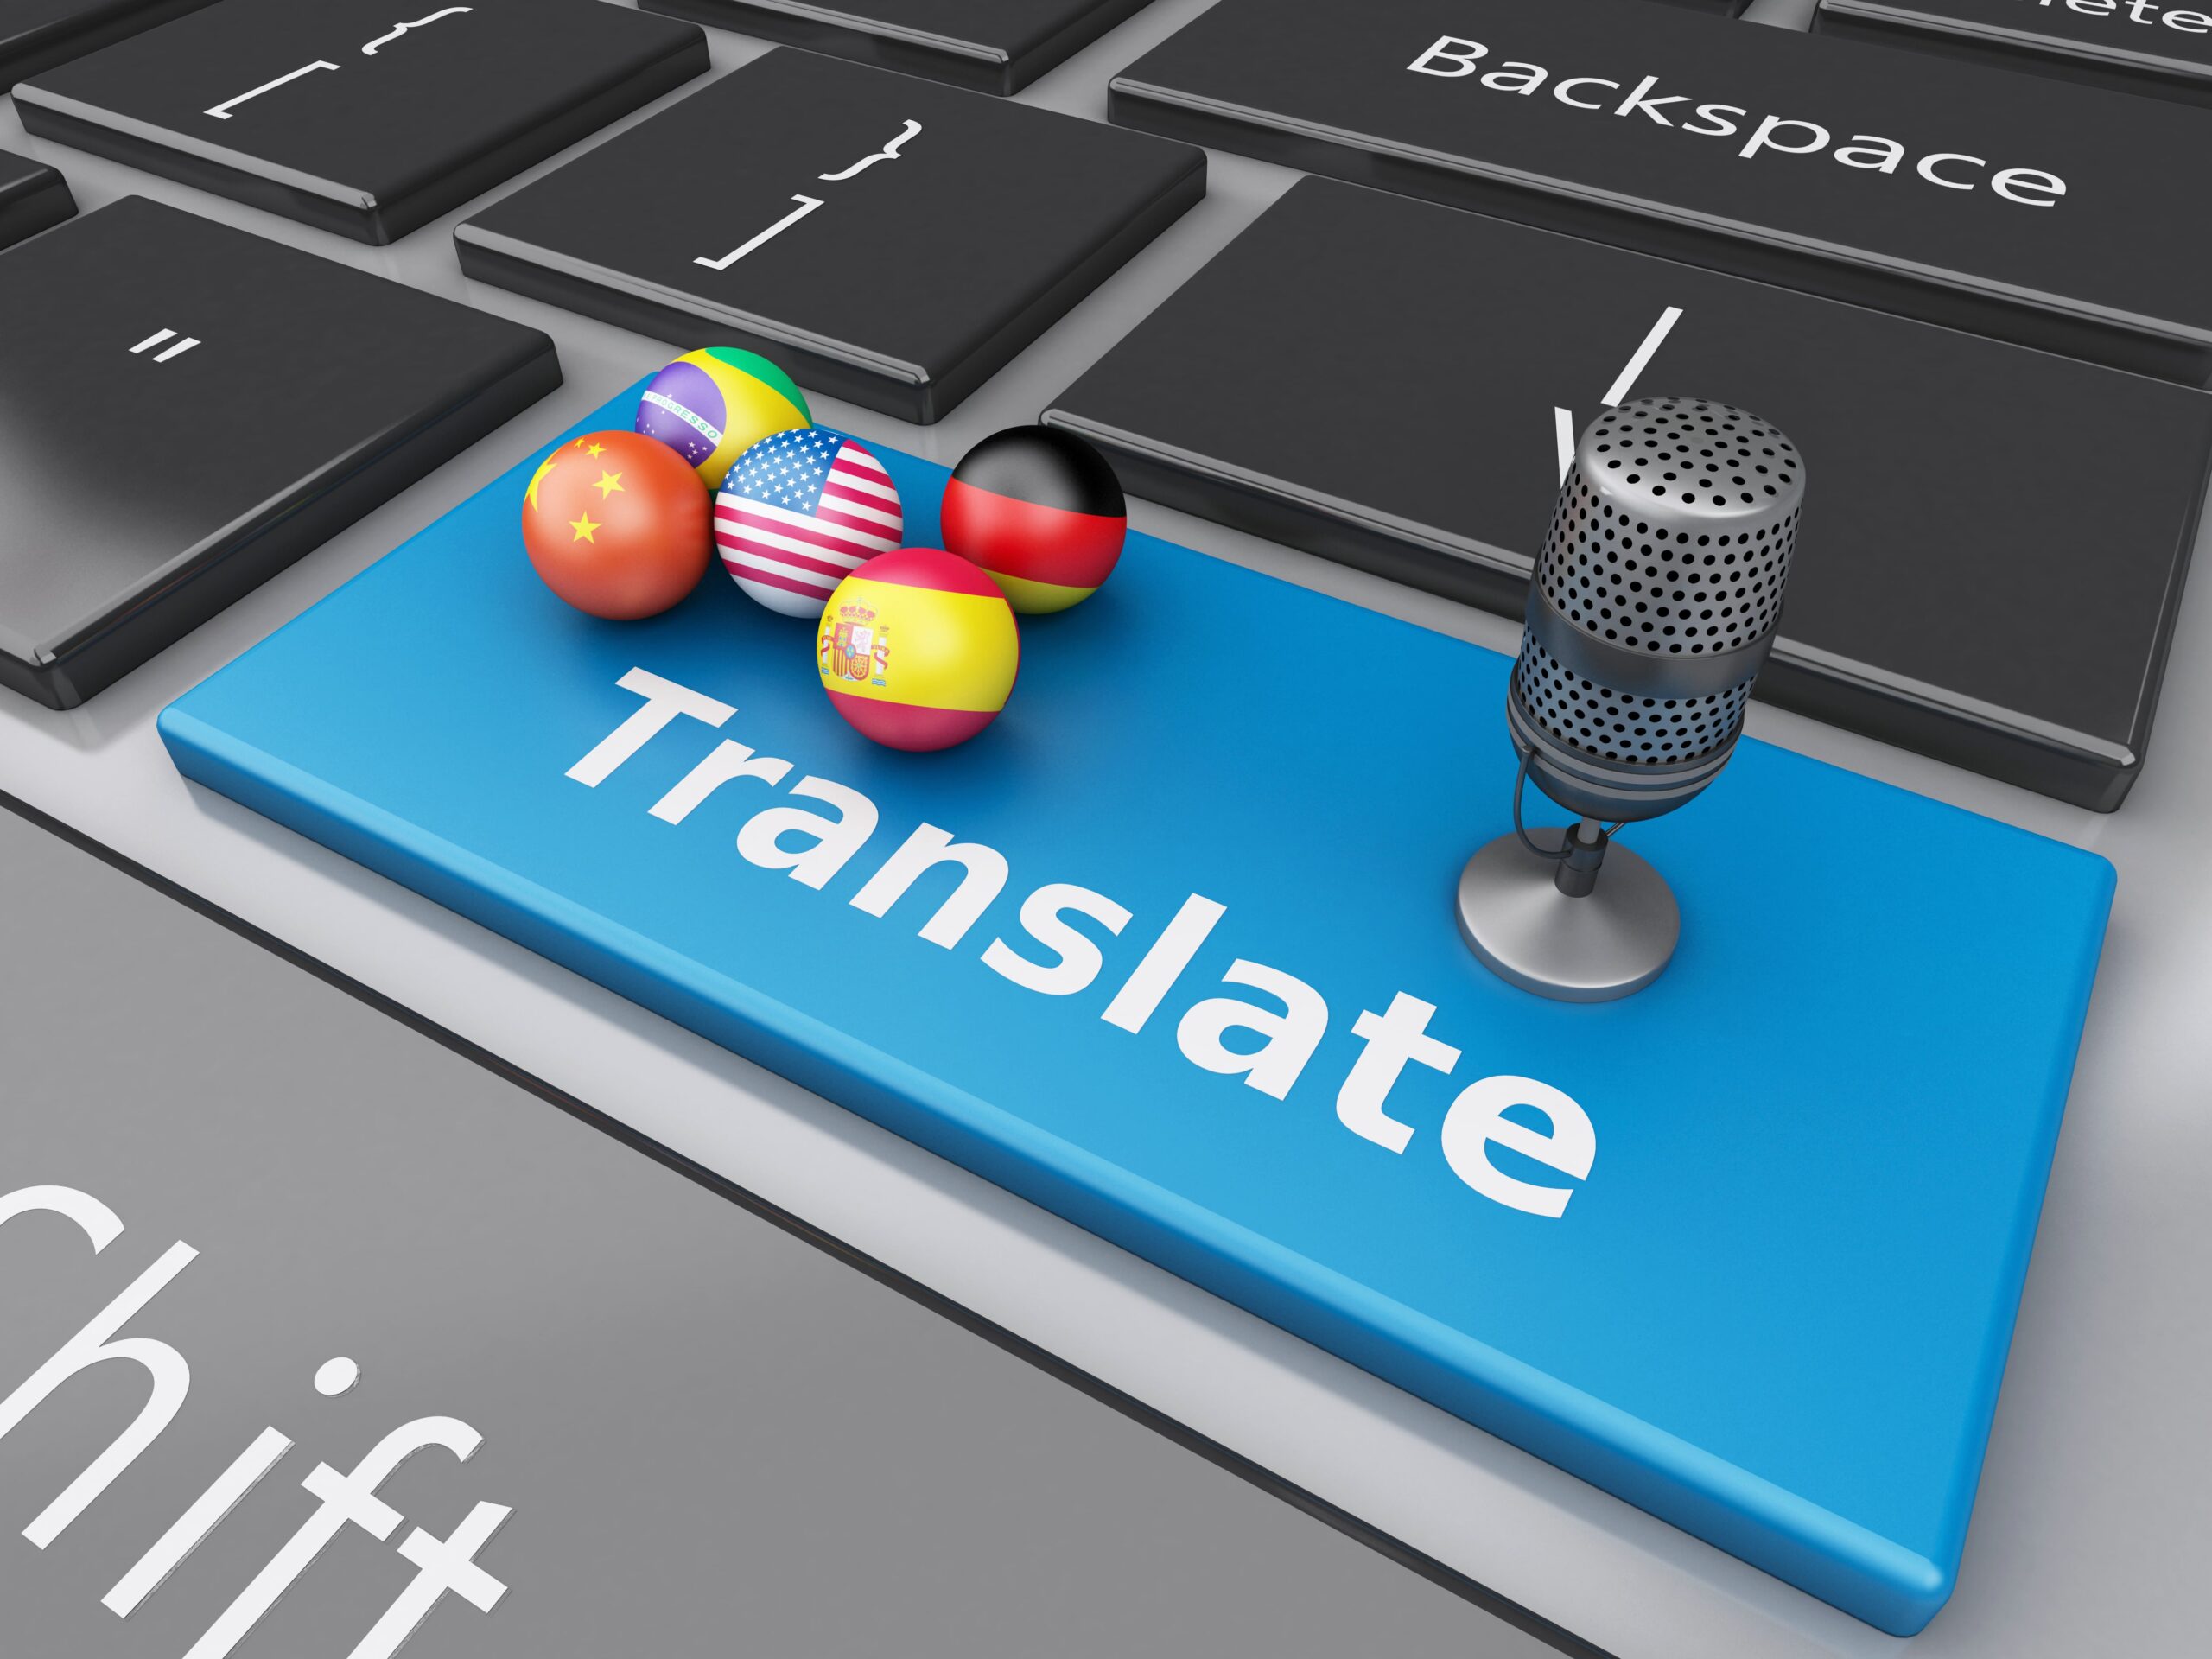 Quanto tempo leva para fazer uma tradução profissional?